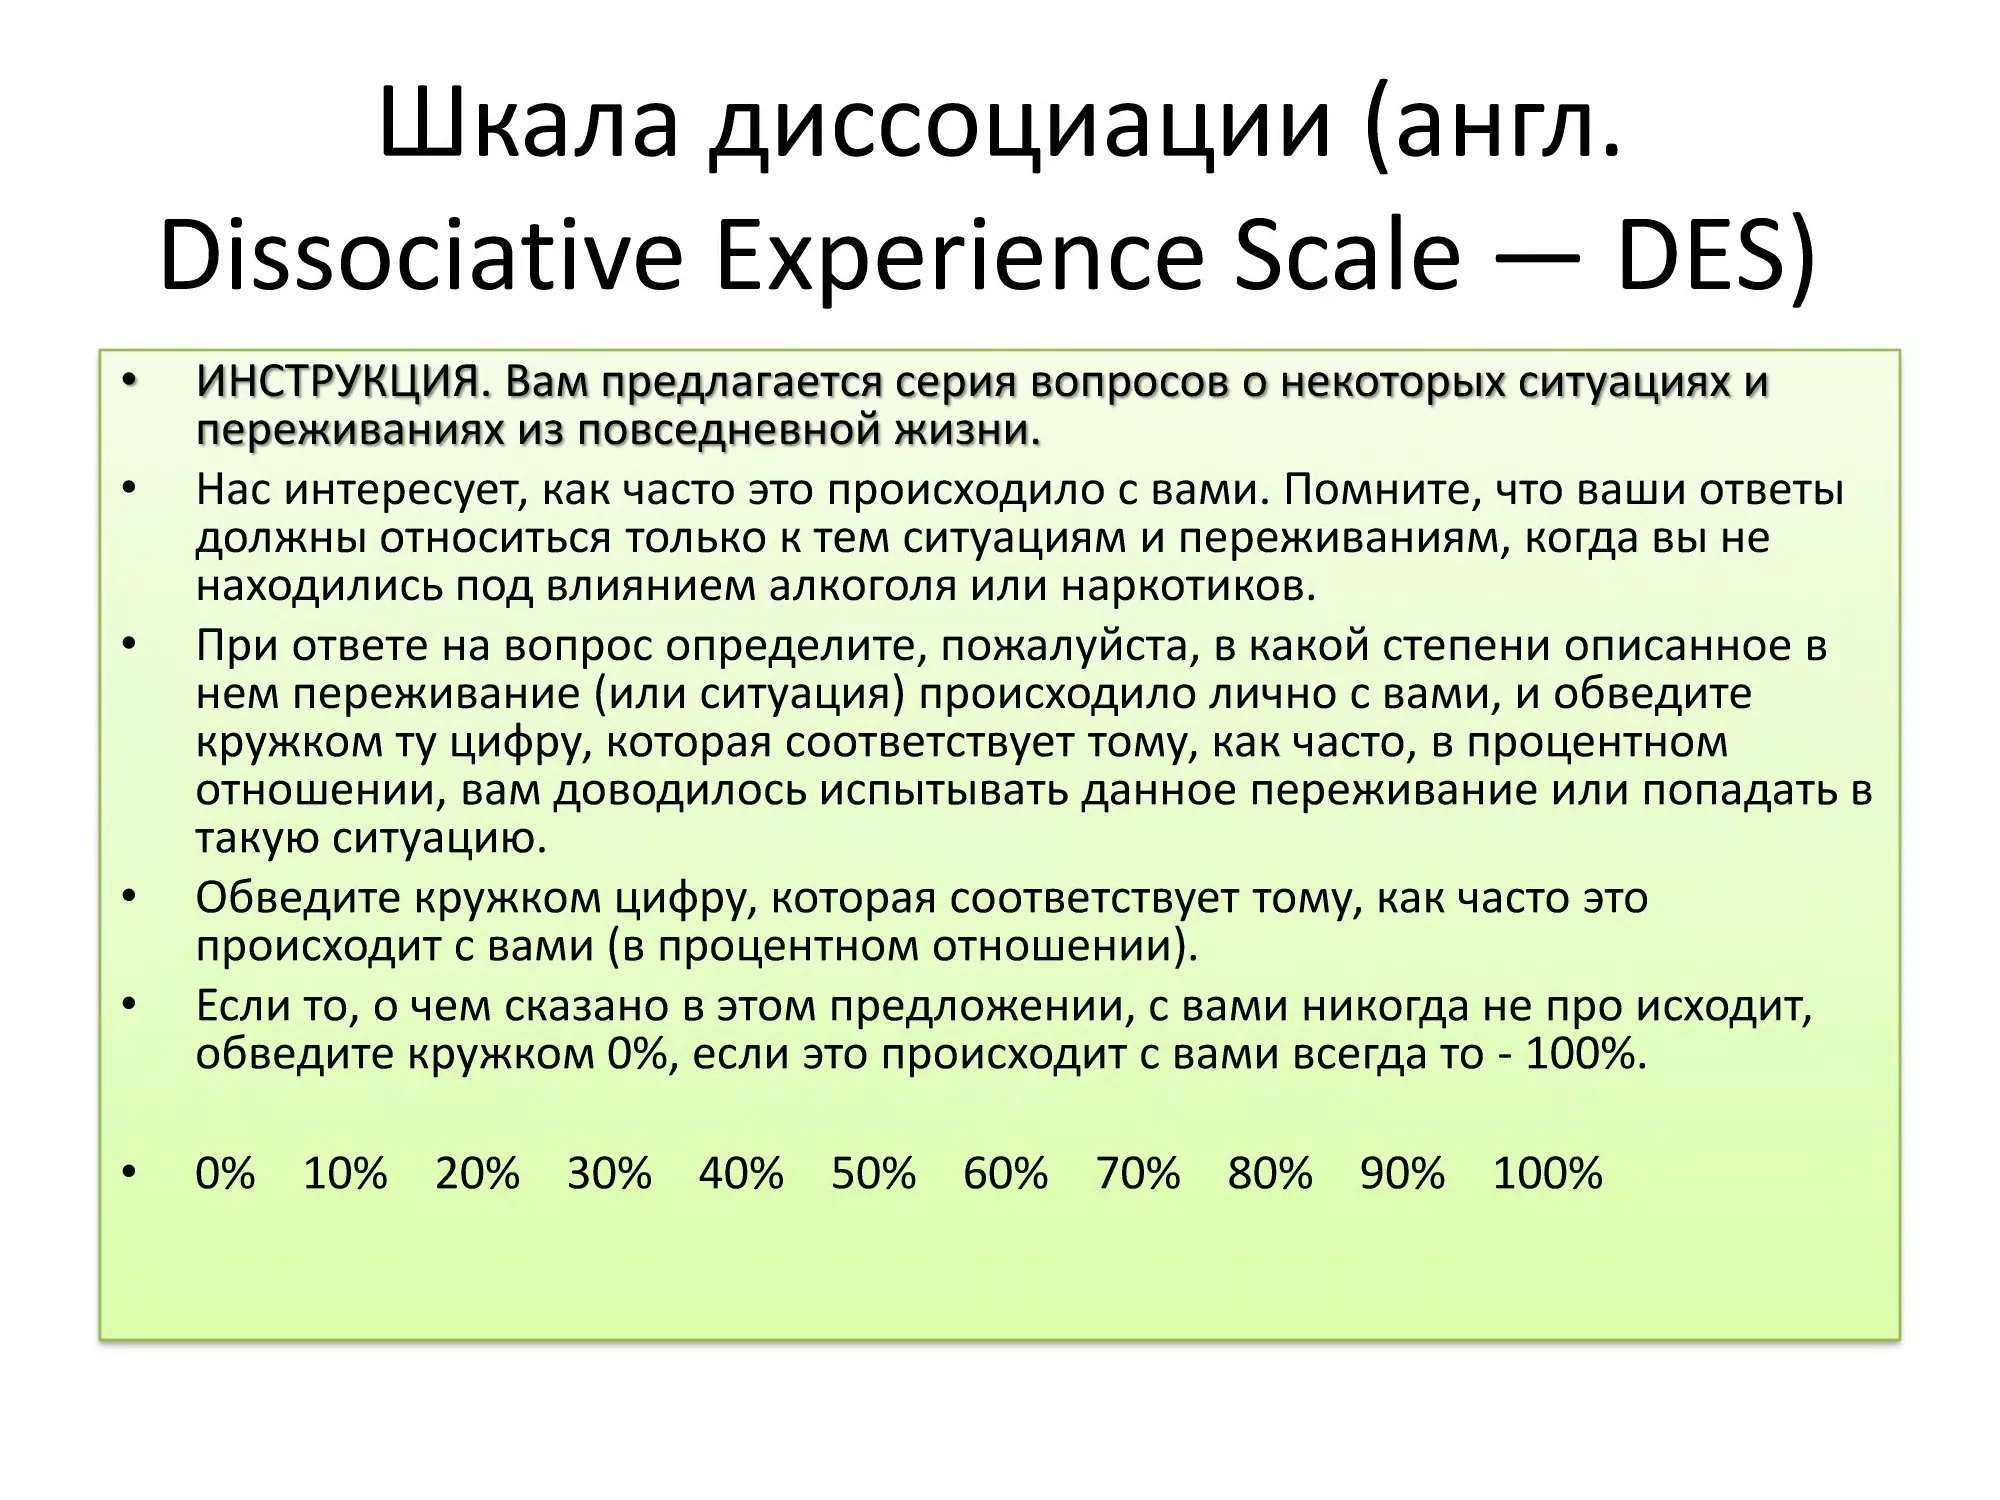 Слайд 13, Шкала диссоциации (англ. Dissociative Experience Scale — DES) 